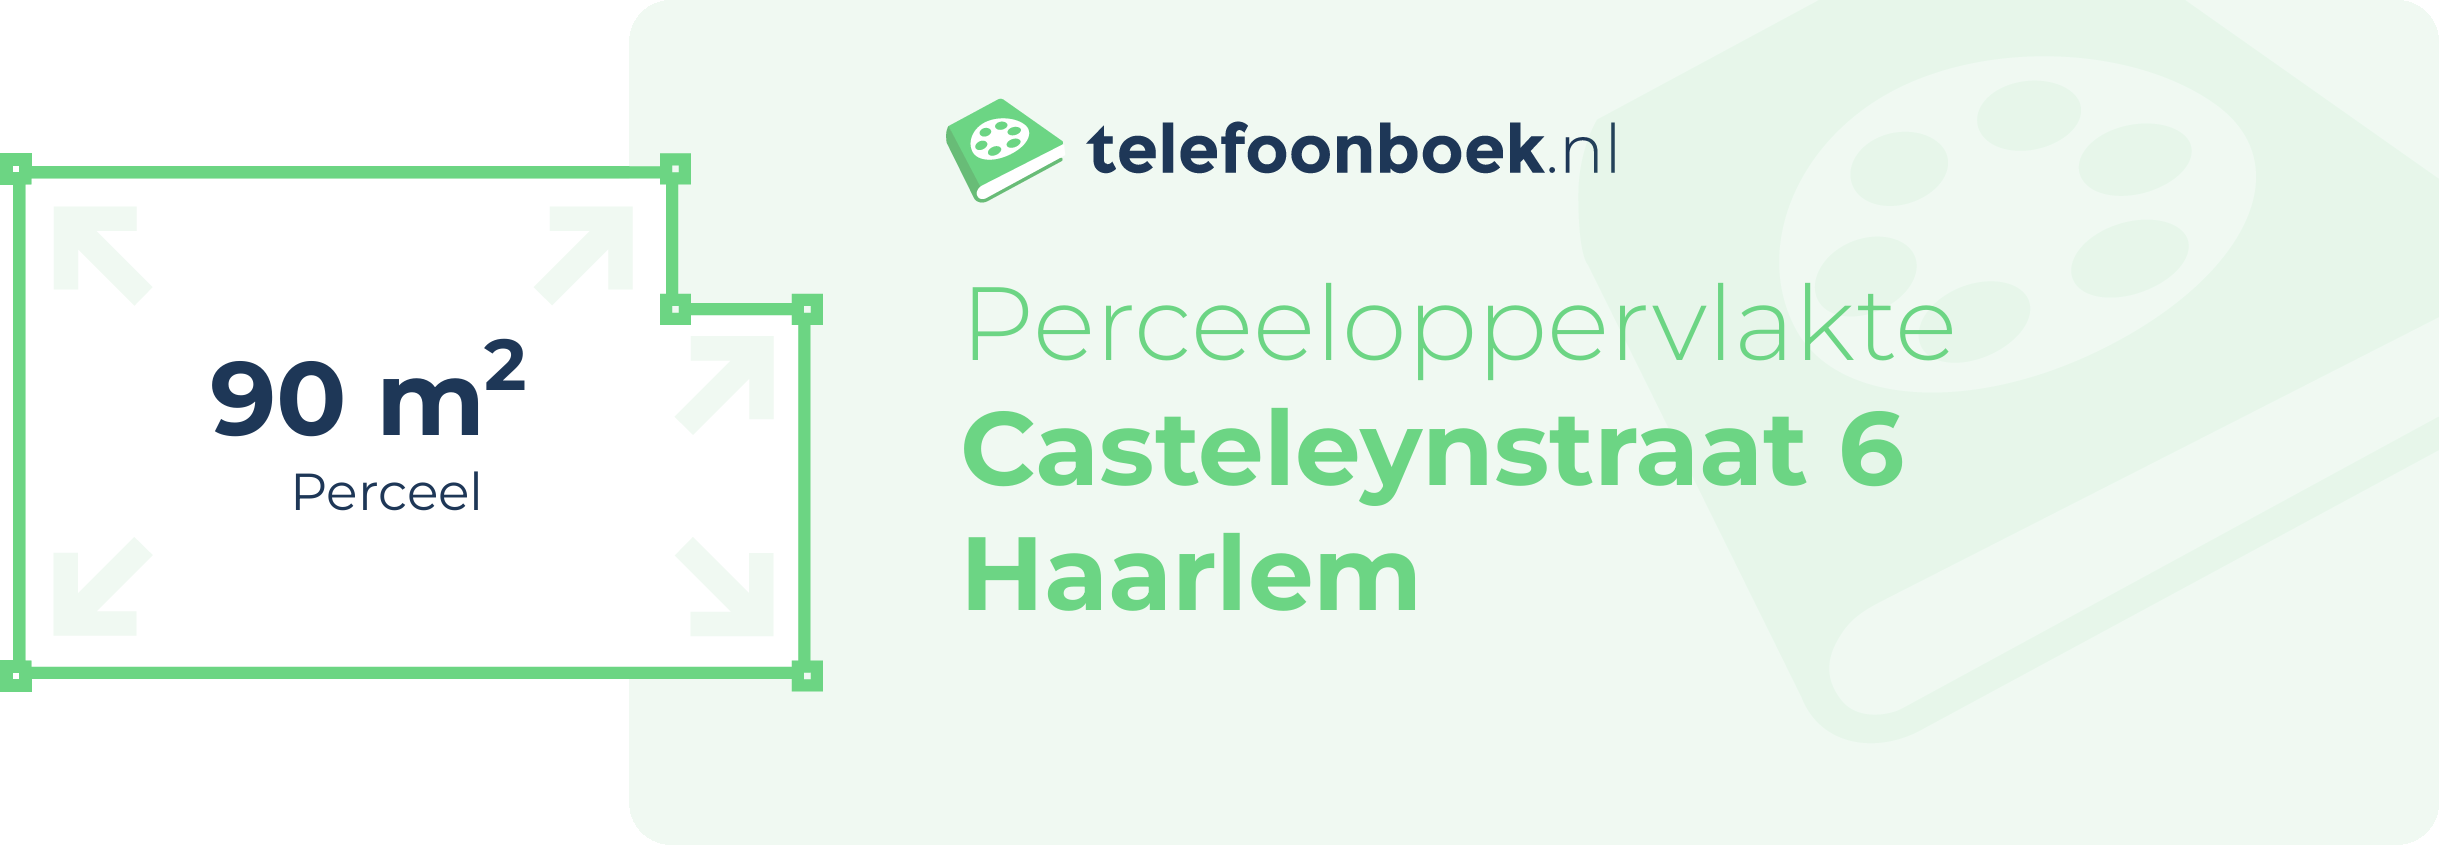 Perceeloppervlakte Casteleynstraat 6 Haarlem